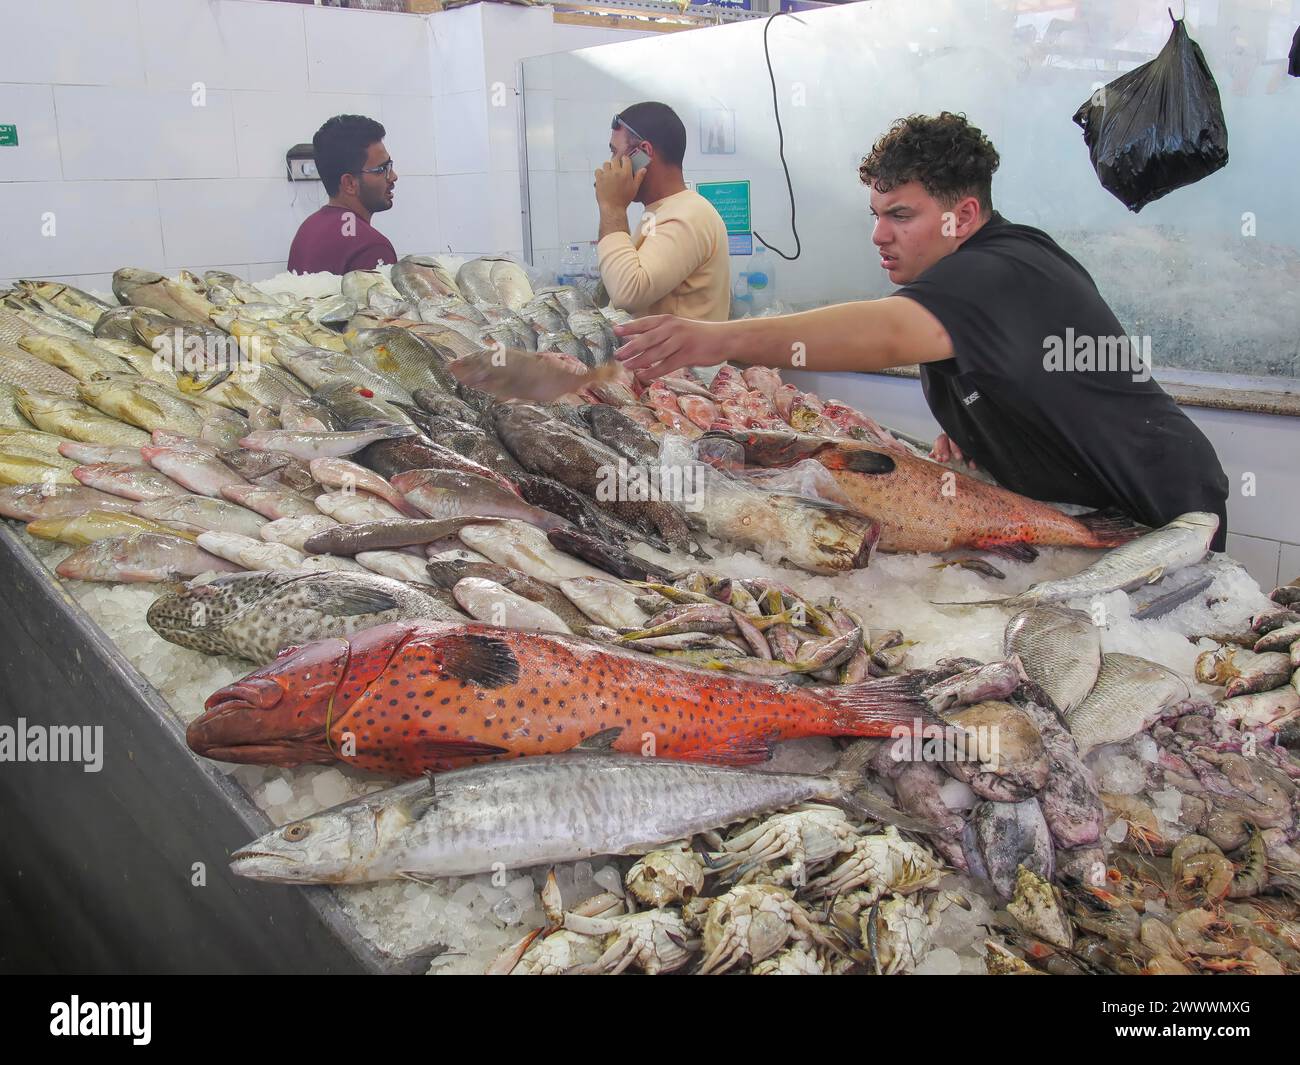 Juwelenbarsch und andere Fische im Fischmarkt von Hurghada, Ägypten Banque D'Images